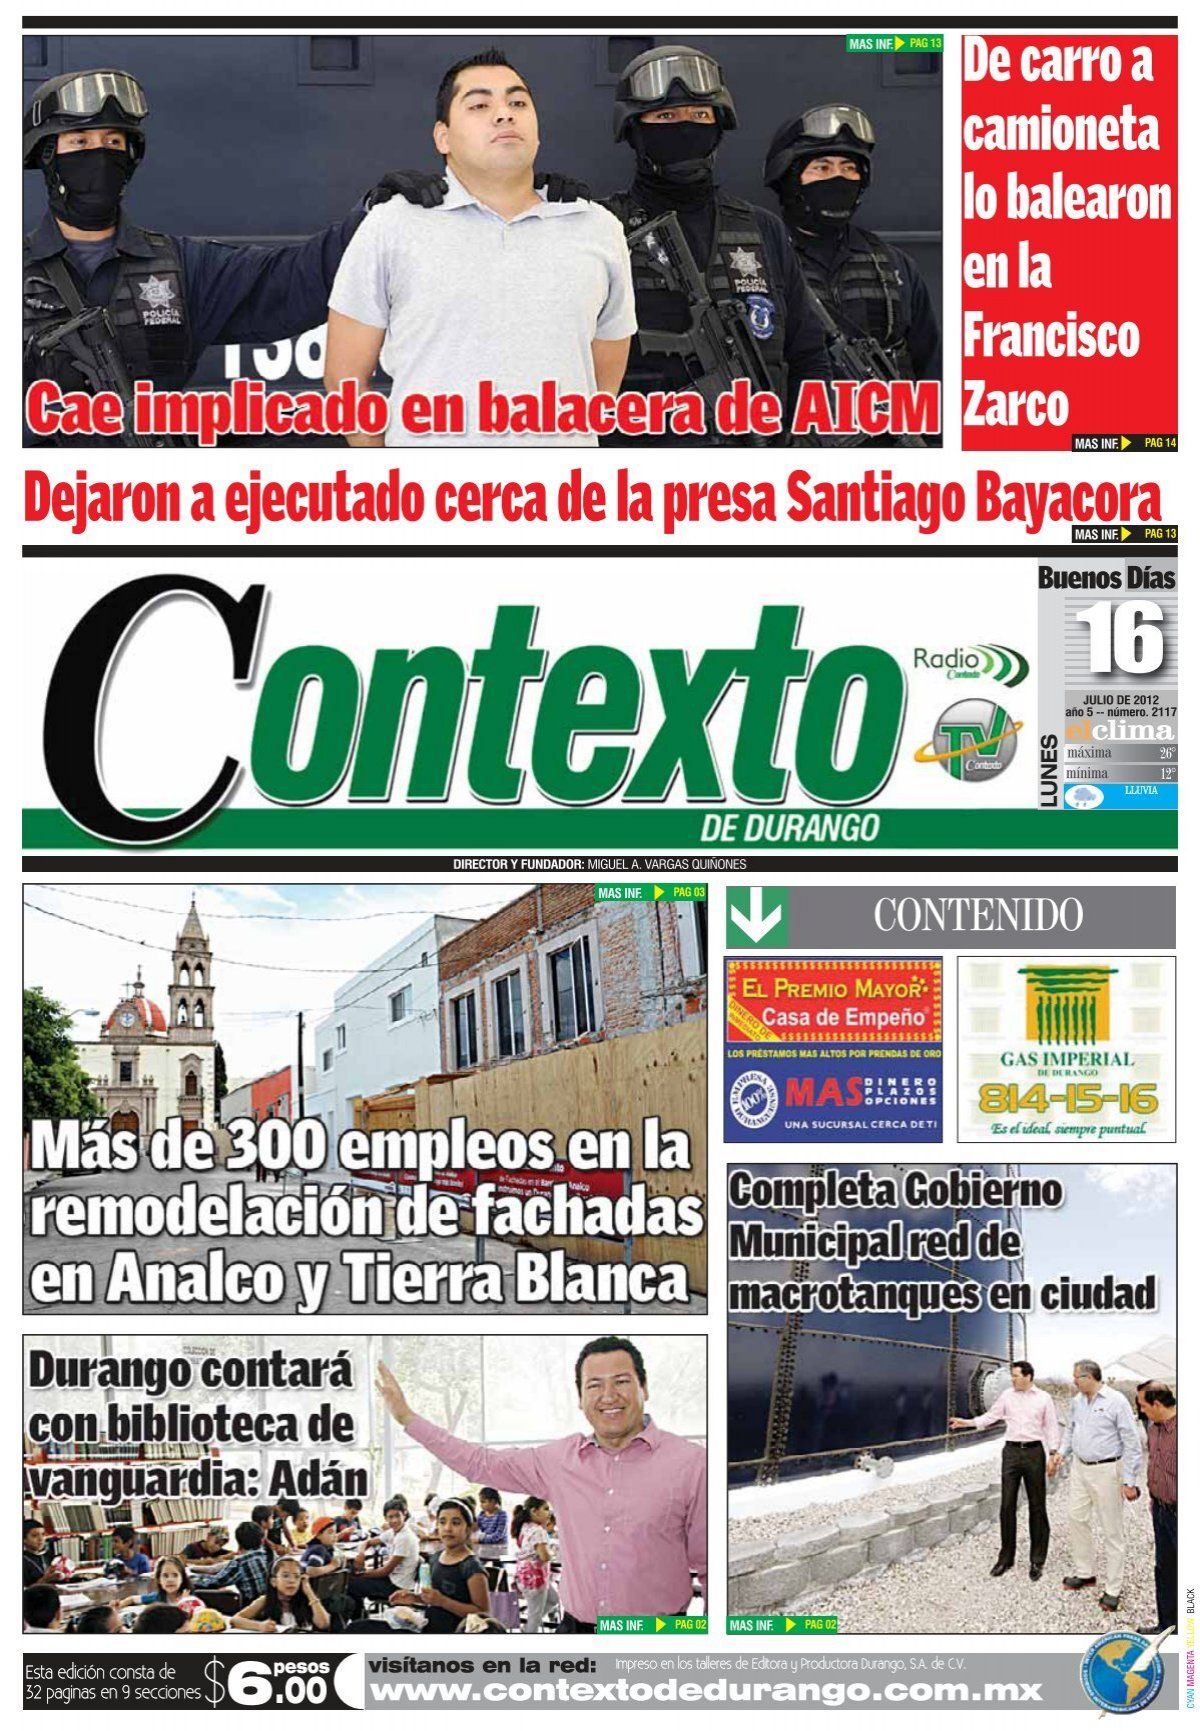 Termex Ventanas, tus ventanas al mundo, reformas de viviendas, instalación  de ventanas en locales en Cáceres - PUERTAS DE ENTRADA